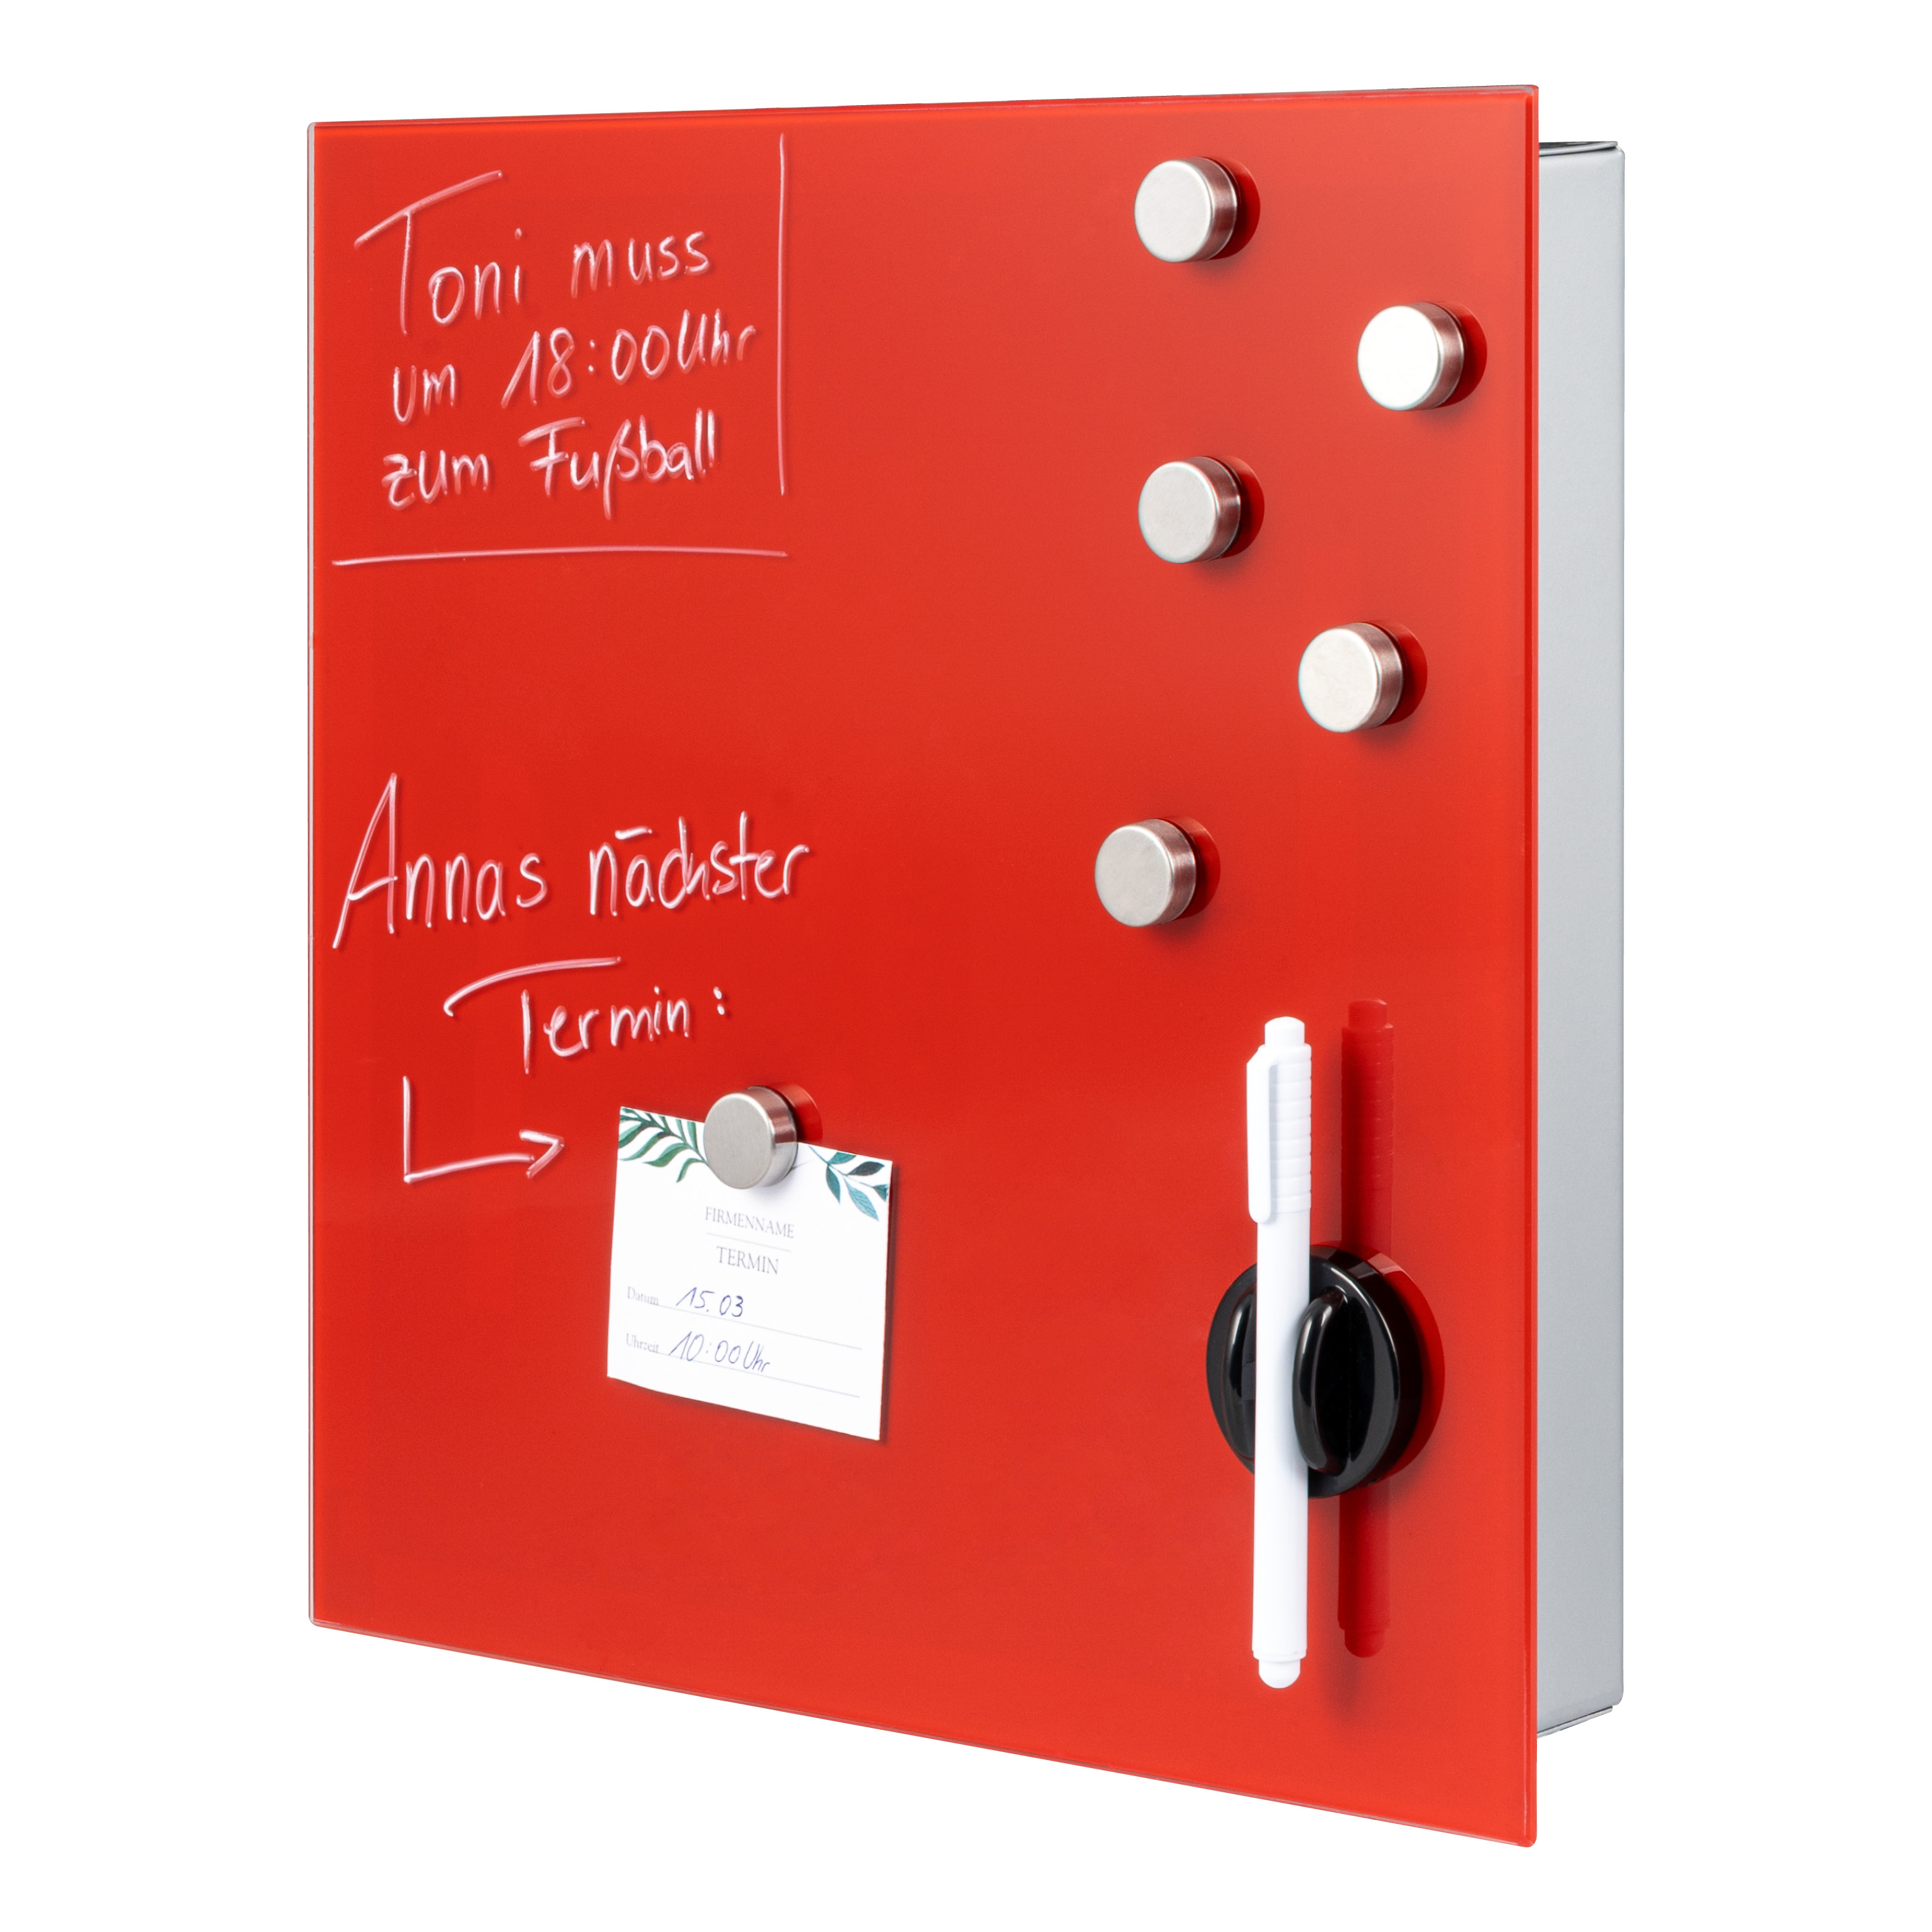 Schlüsselkasten XL mit roter Glasfront, beschreibbar, 13 Haken, 6 Magnete, 1 Marker, 1 Marker-Halter, Korpus aus Metall grau pulverbeschichtet